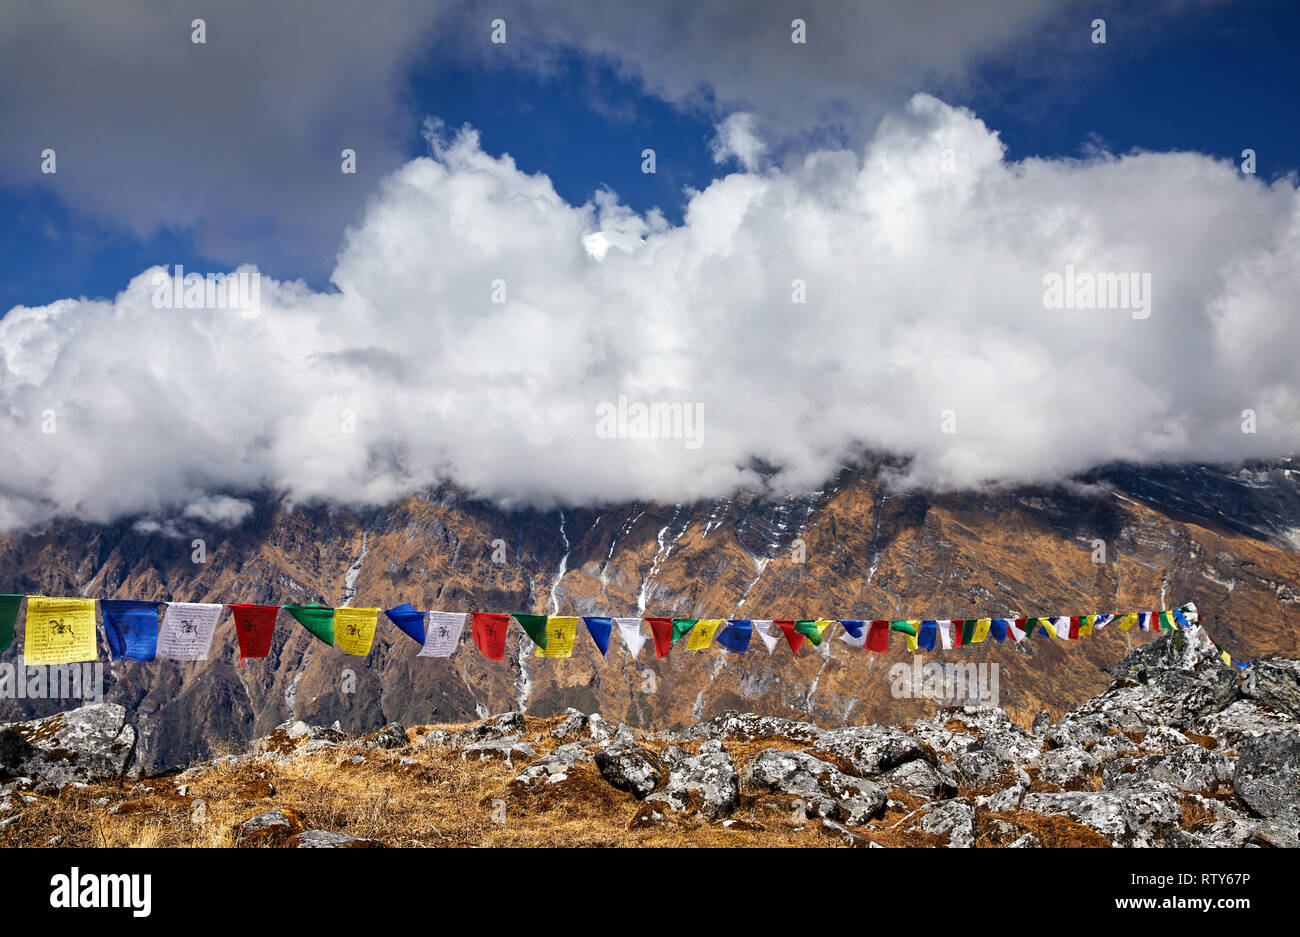 Drapeaux de prière tibetains Lung Ta au camp de base à l'Himal Mardi Nuageux sommets de montagnes de l'Himalaya au Népal Banque D'Images